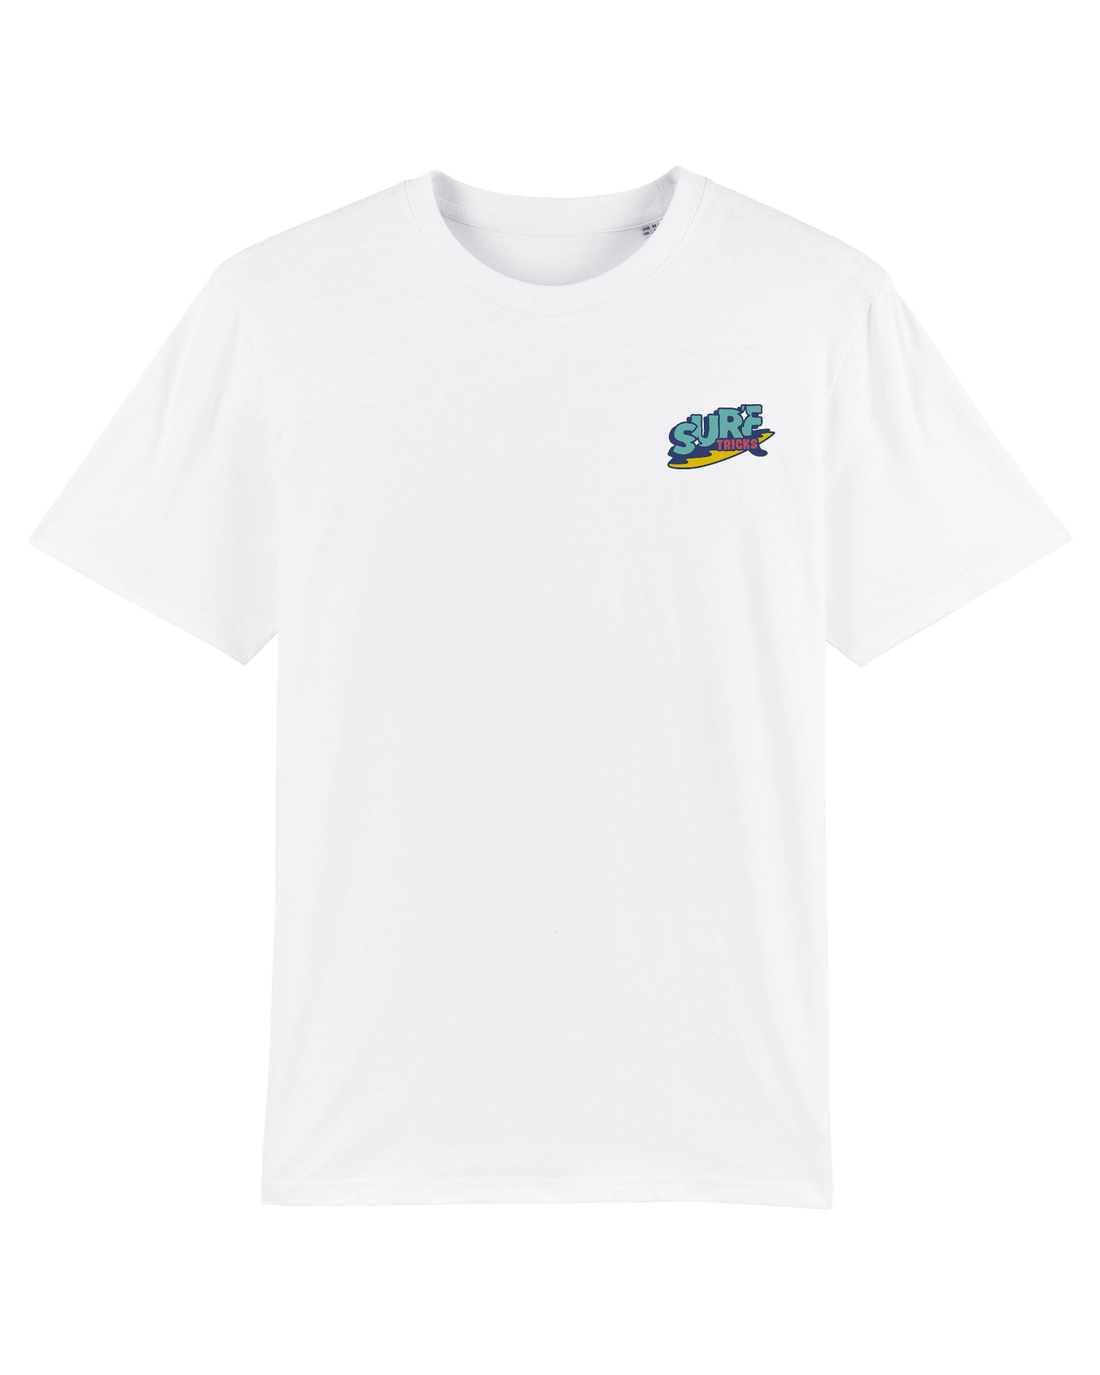 White Skater T-Shirt, Surf Tricks Front Print